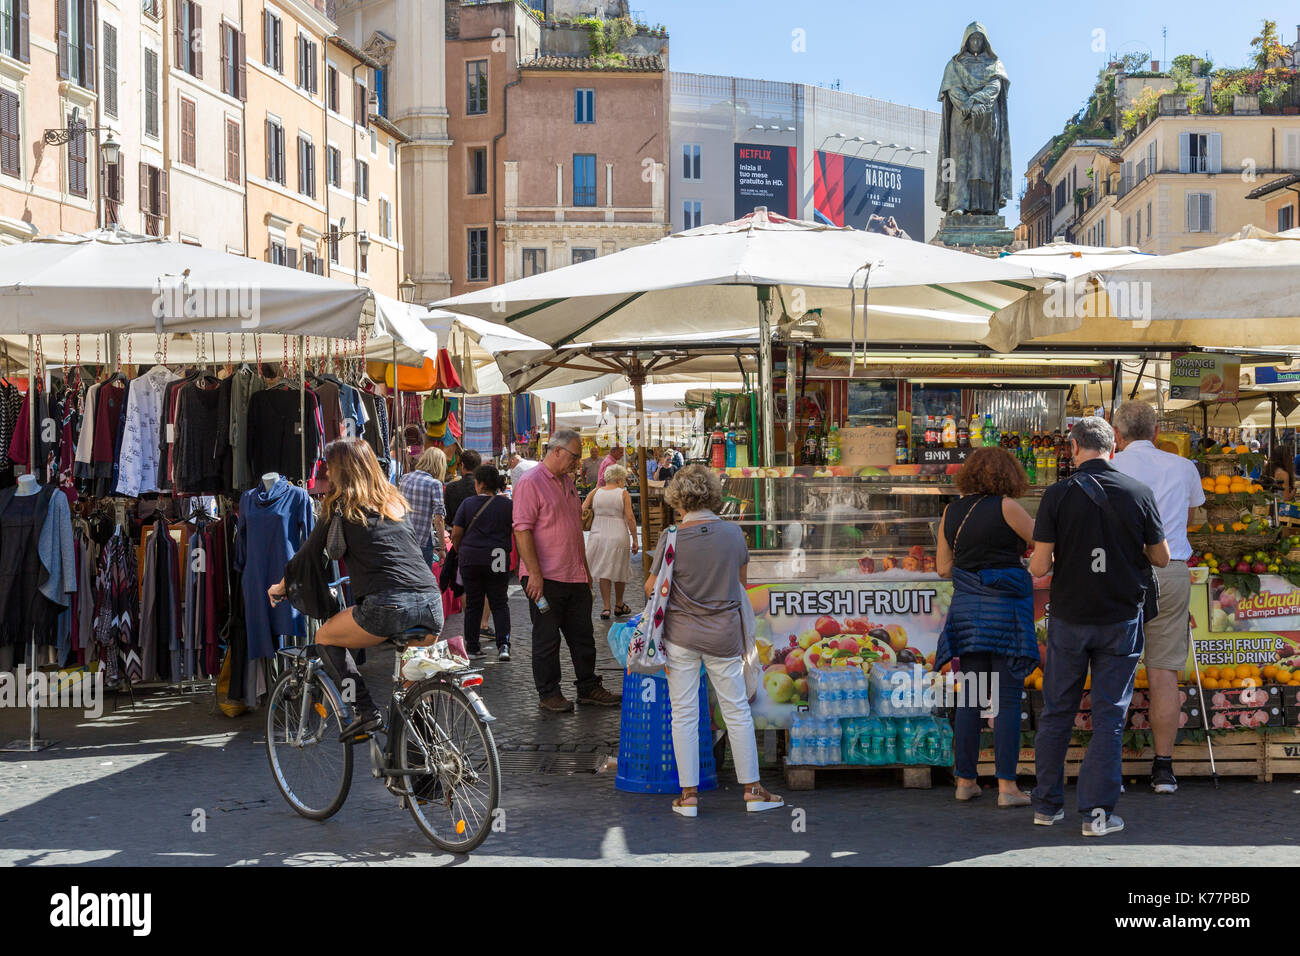 Älteste Markt im Freien in Rom, Campo de' Fiori, geschäftigen Menschenmassen Einkaufsmöglichkeiten für Güter. Stockfoto